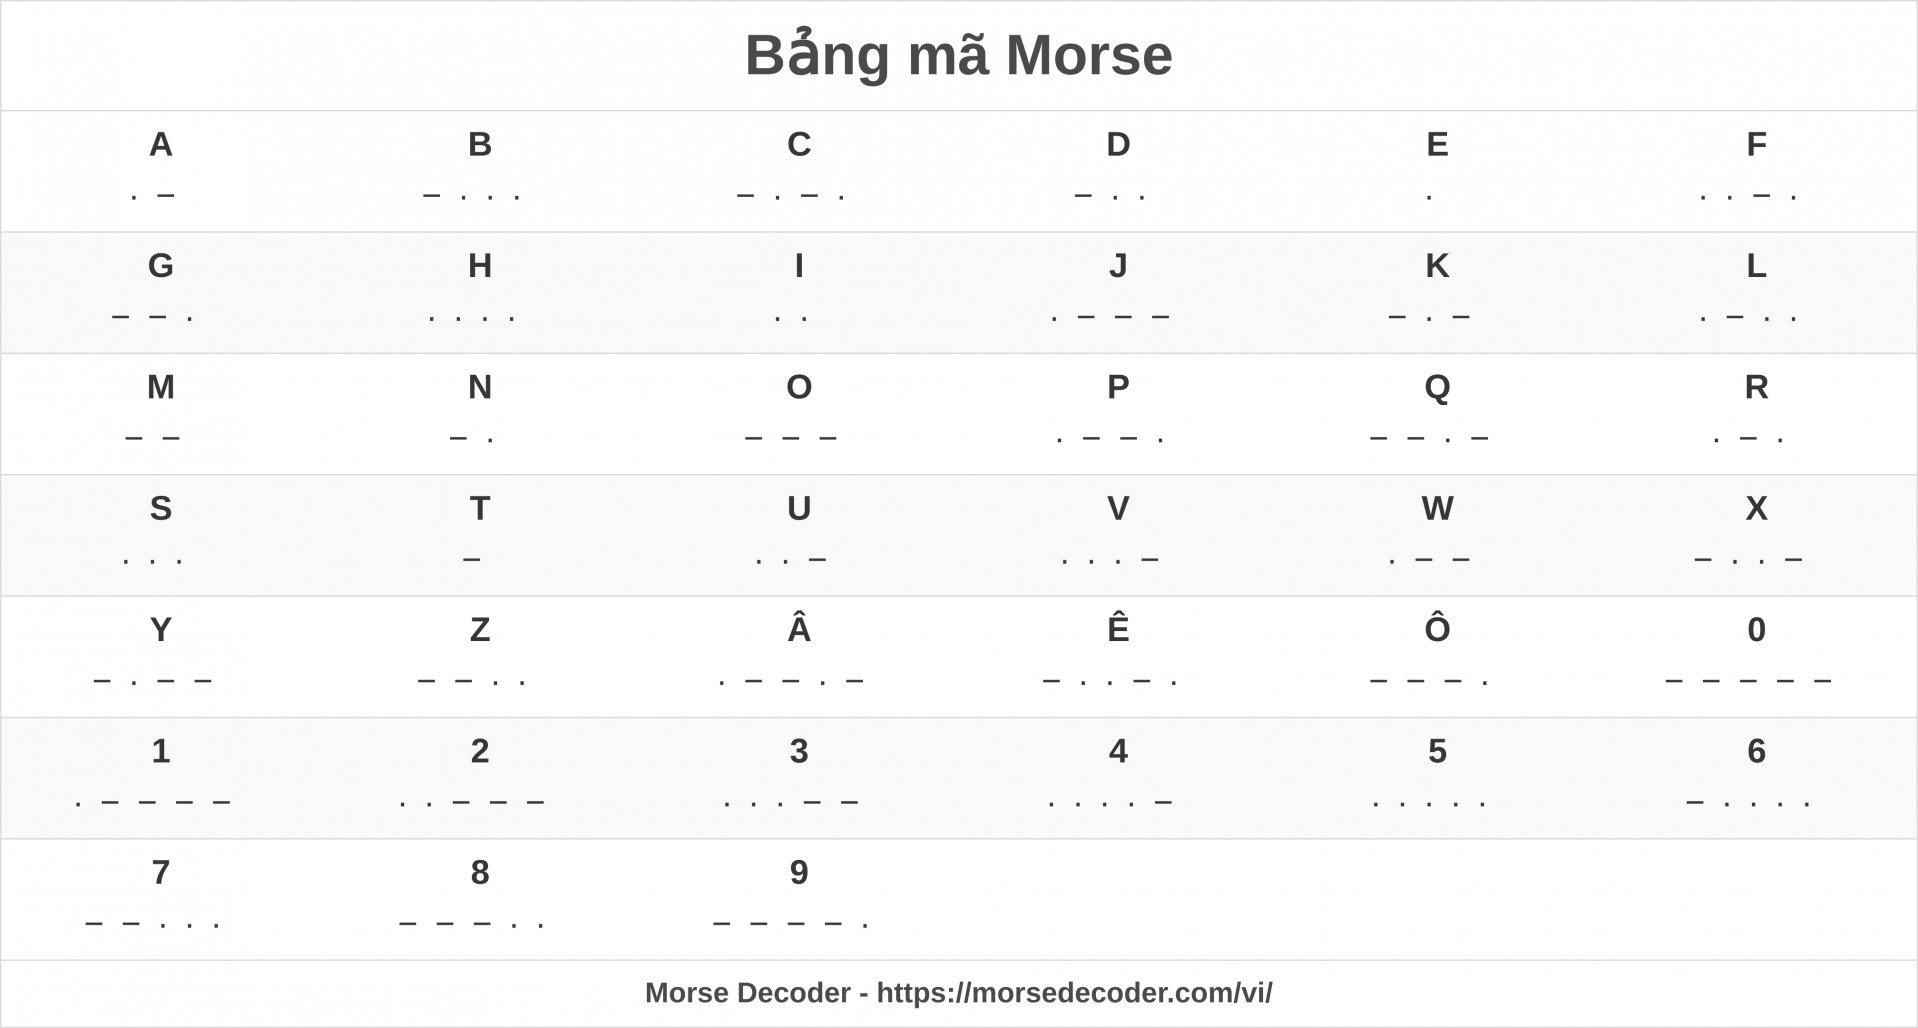 Bảng mã Morse